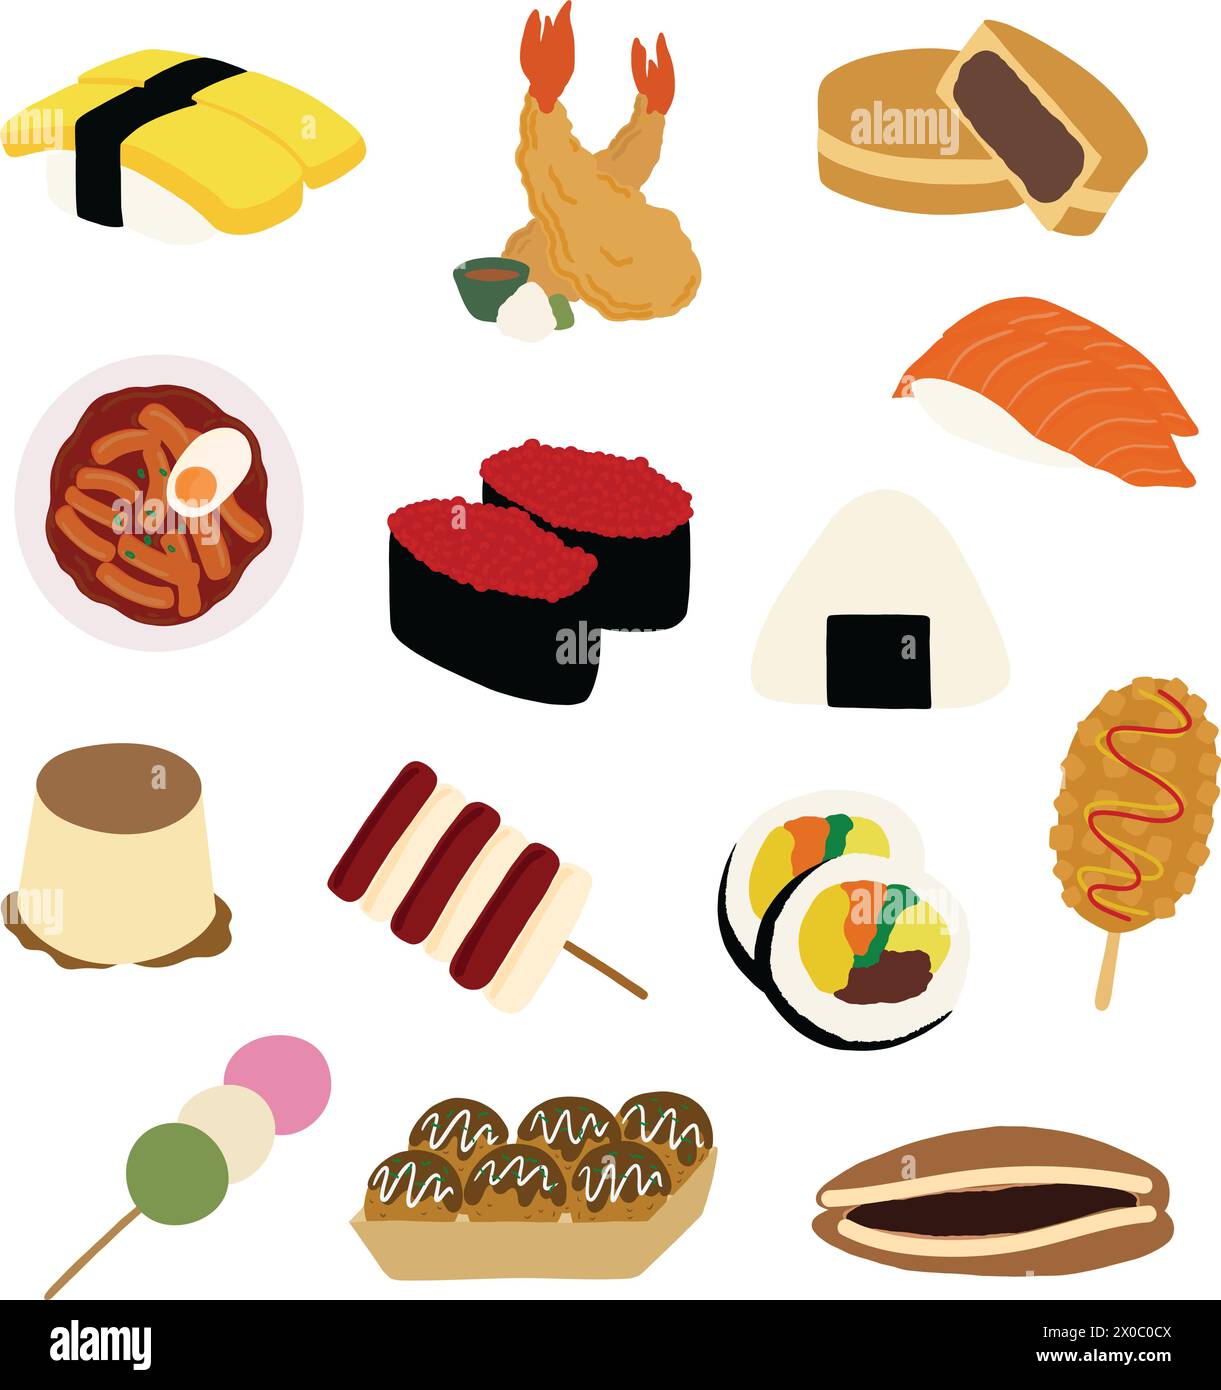 Plats asiatiques dessinés à la main et en-cas, y compris sushi, tempura, onigiri, saucisse de maïs chien, crêpe aux haricots rouges, dango pour la cuisine coréenne, la cuisine japonaise, le menu Illustration de Vecteur